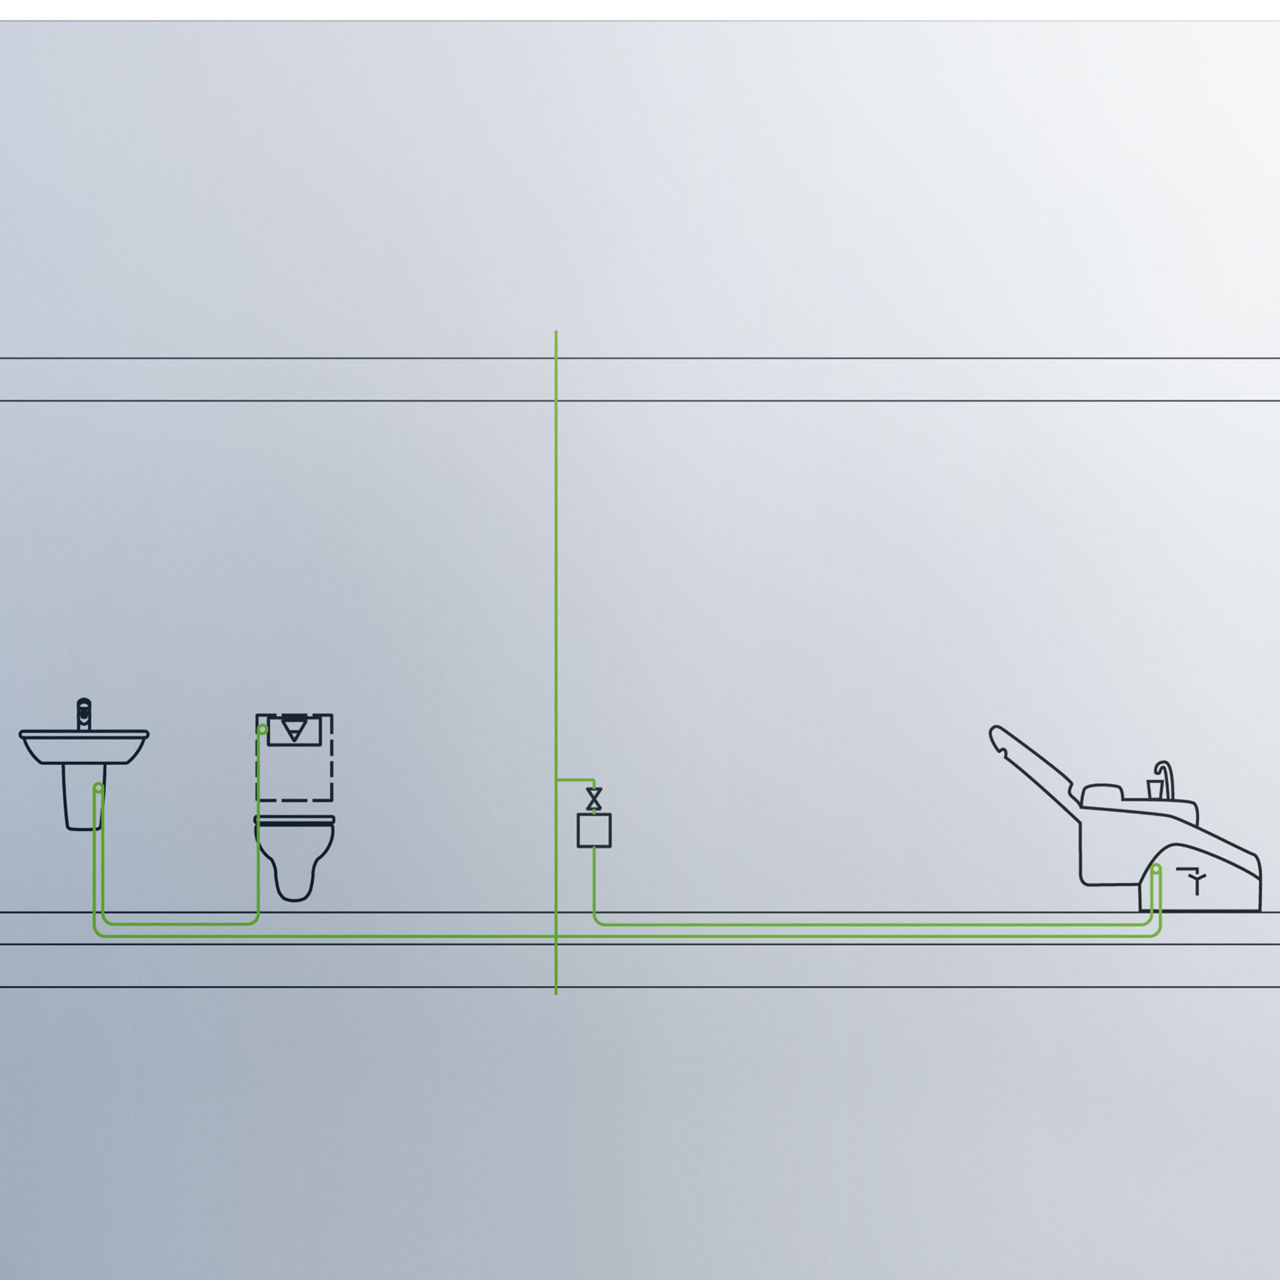 Ugradnja potisne ploče s funkcijom ispiranja Viega Hygiene+ na kraju svakog etažnog voda trajno osigu-rava higijenu pitke vode. Najčešće korišteno potrošno mjesto (većinom WC) nalazi se na kraju tog voda.